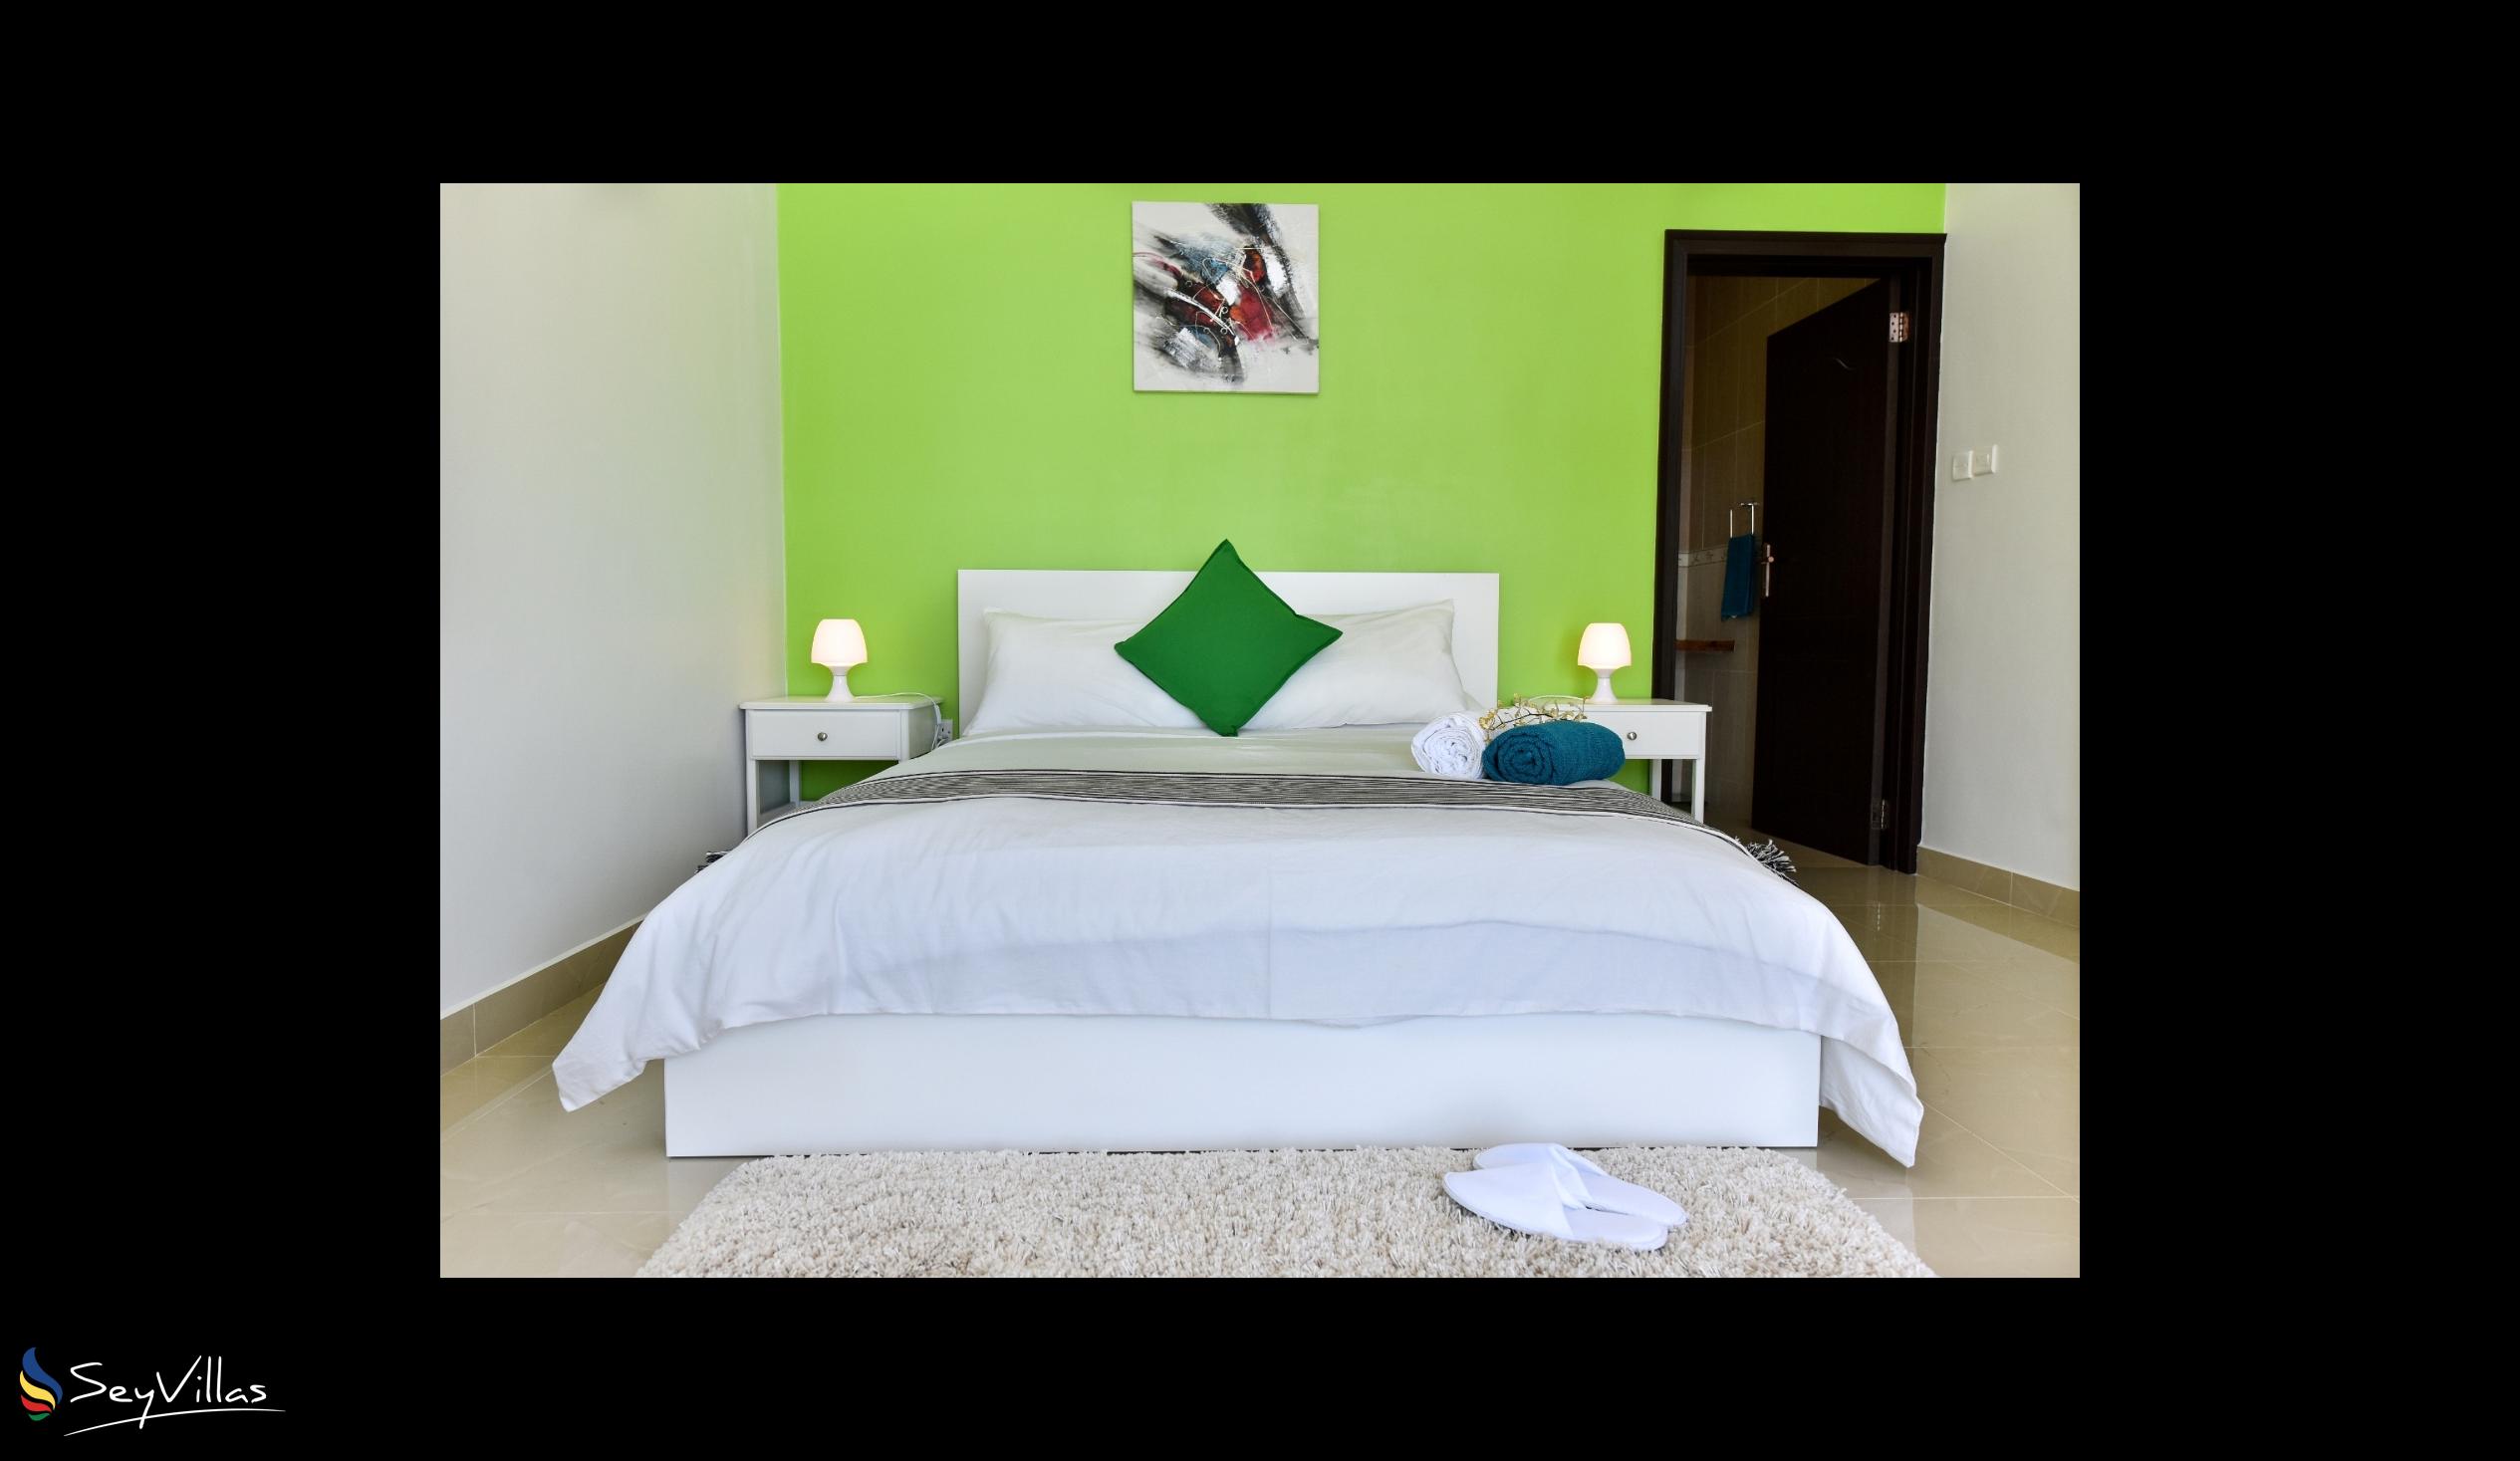 Foto 15: Moulin Kann Villas - Appartamento con 1 camera da letto - Mahé (Seychelles)